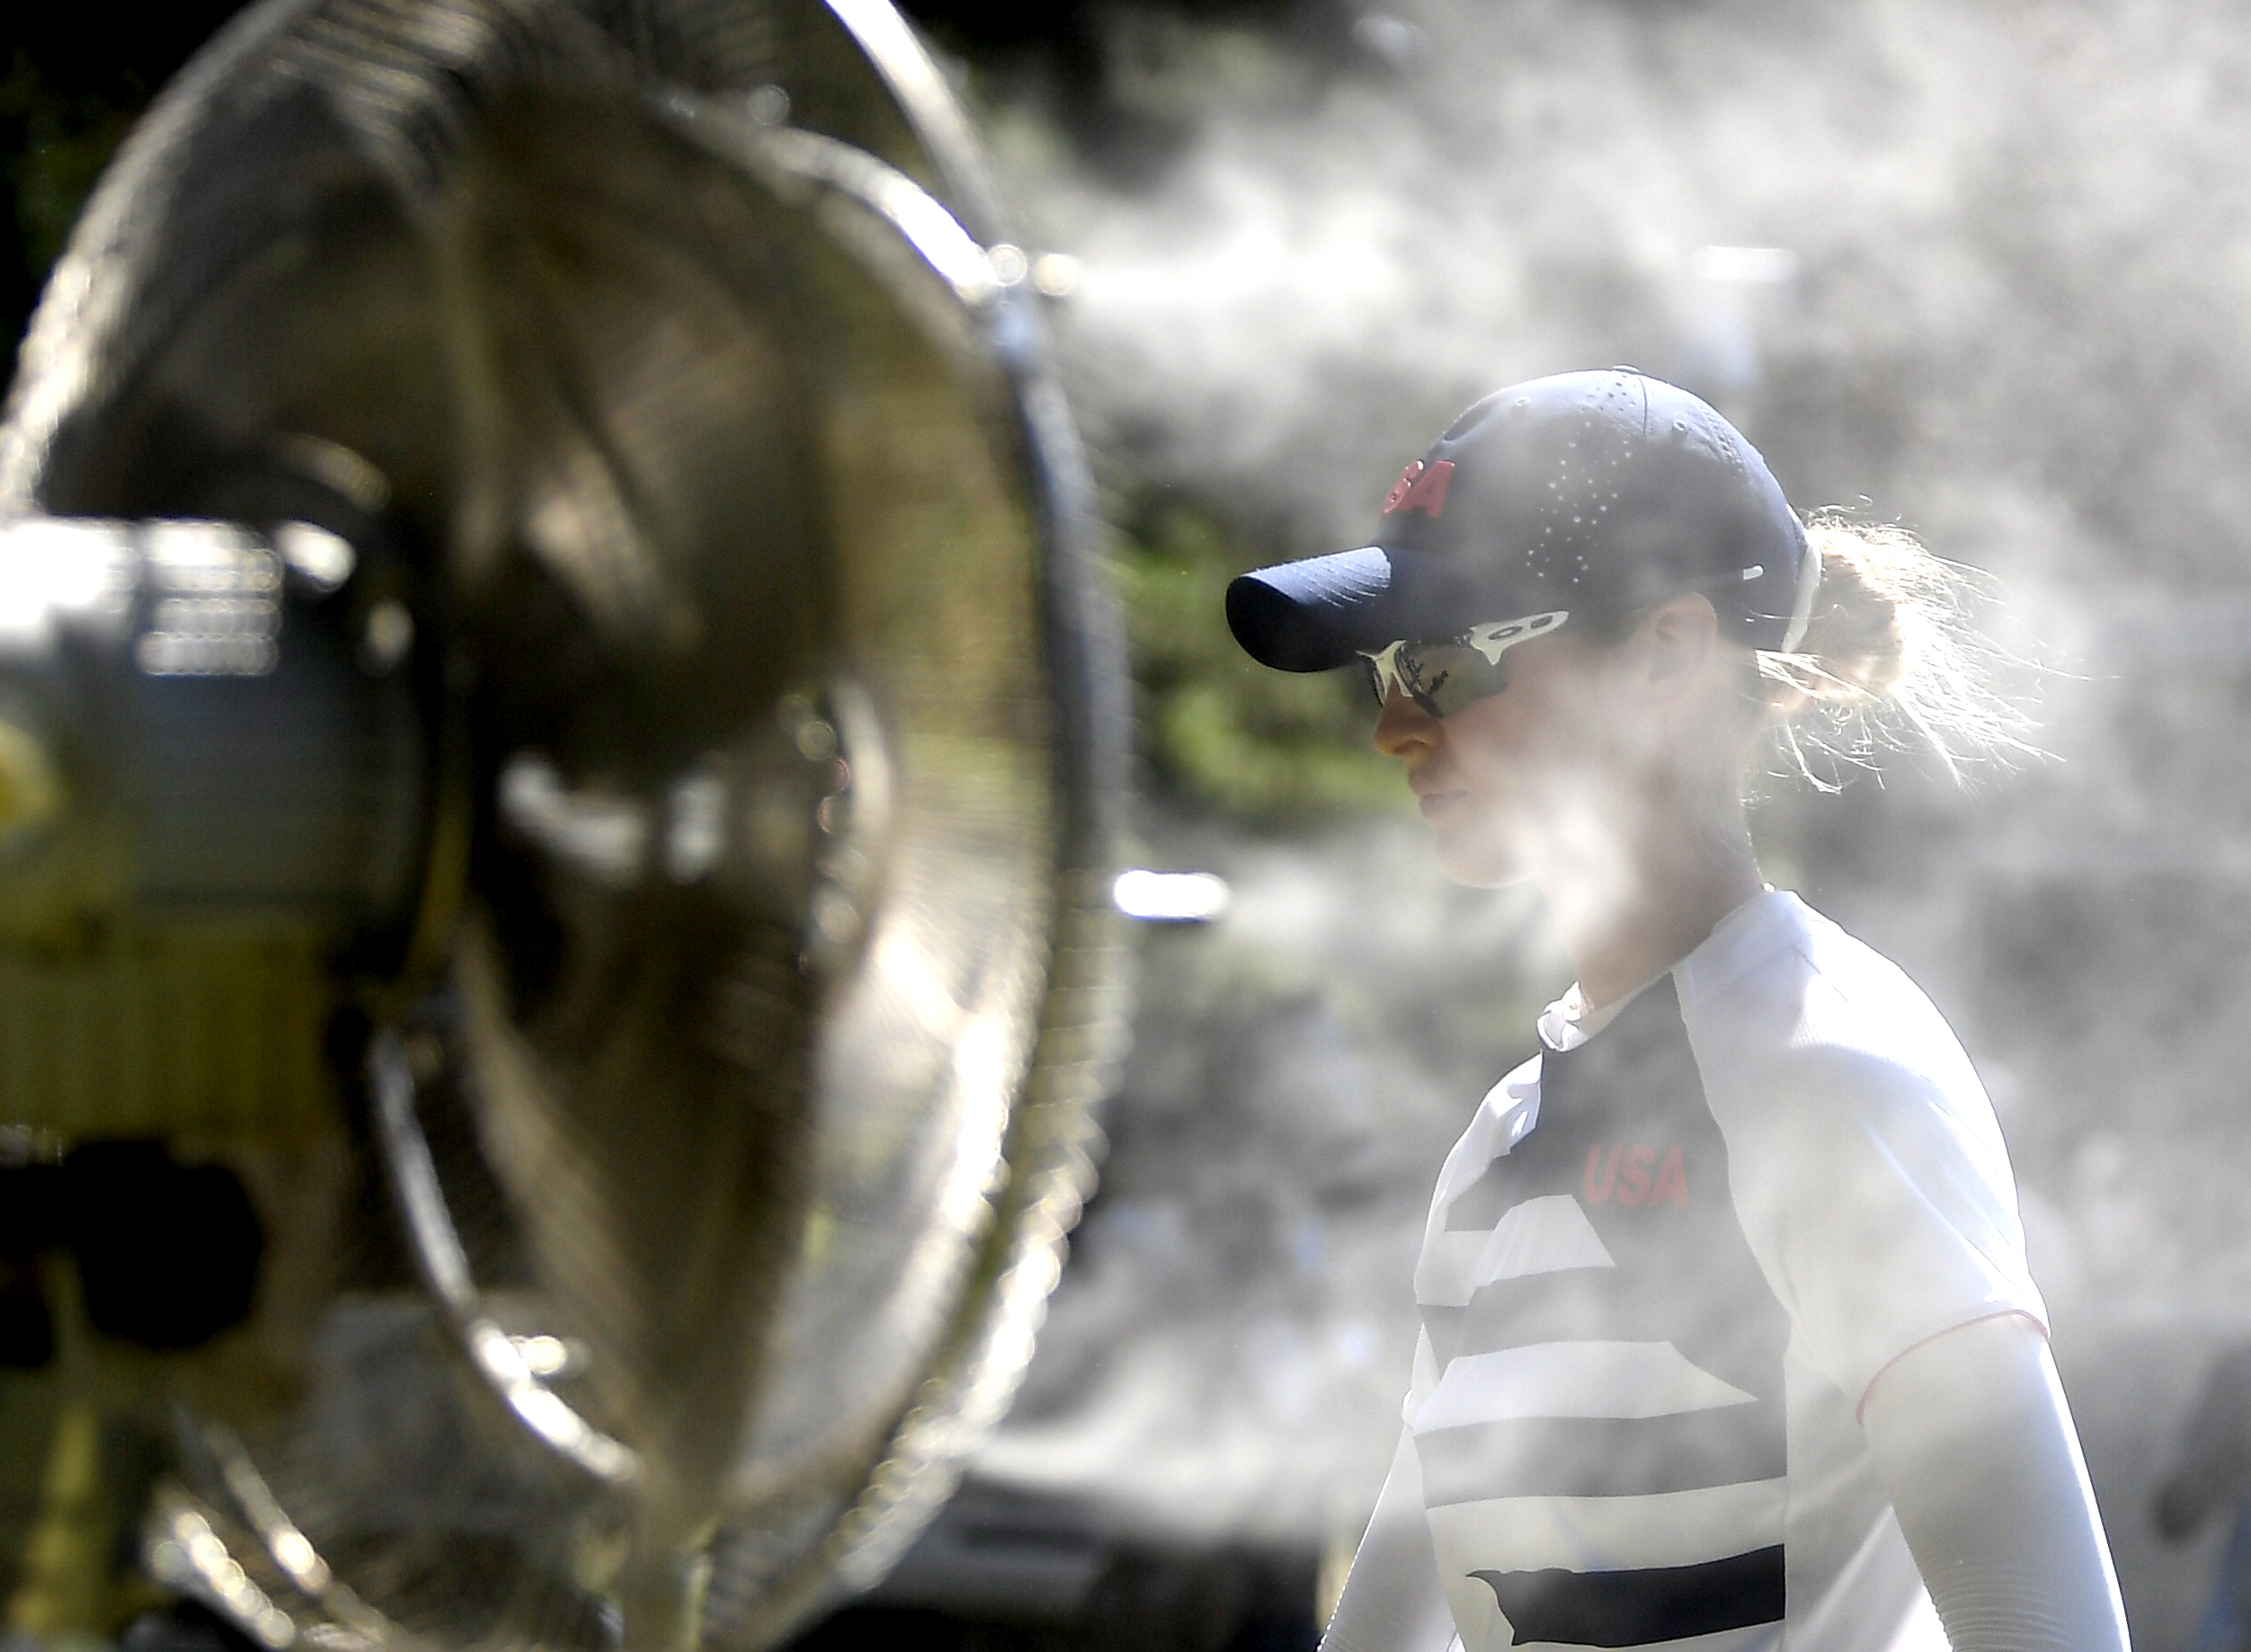 El calor provocó que los ventiladores refrescaran a Nelly Korda de los Estados Unidos en el torneo femenino de golf.